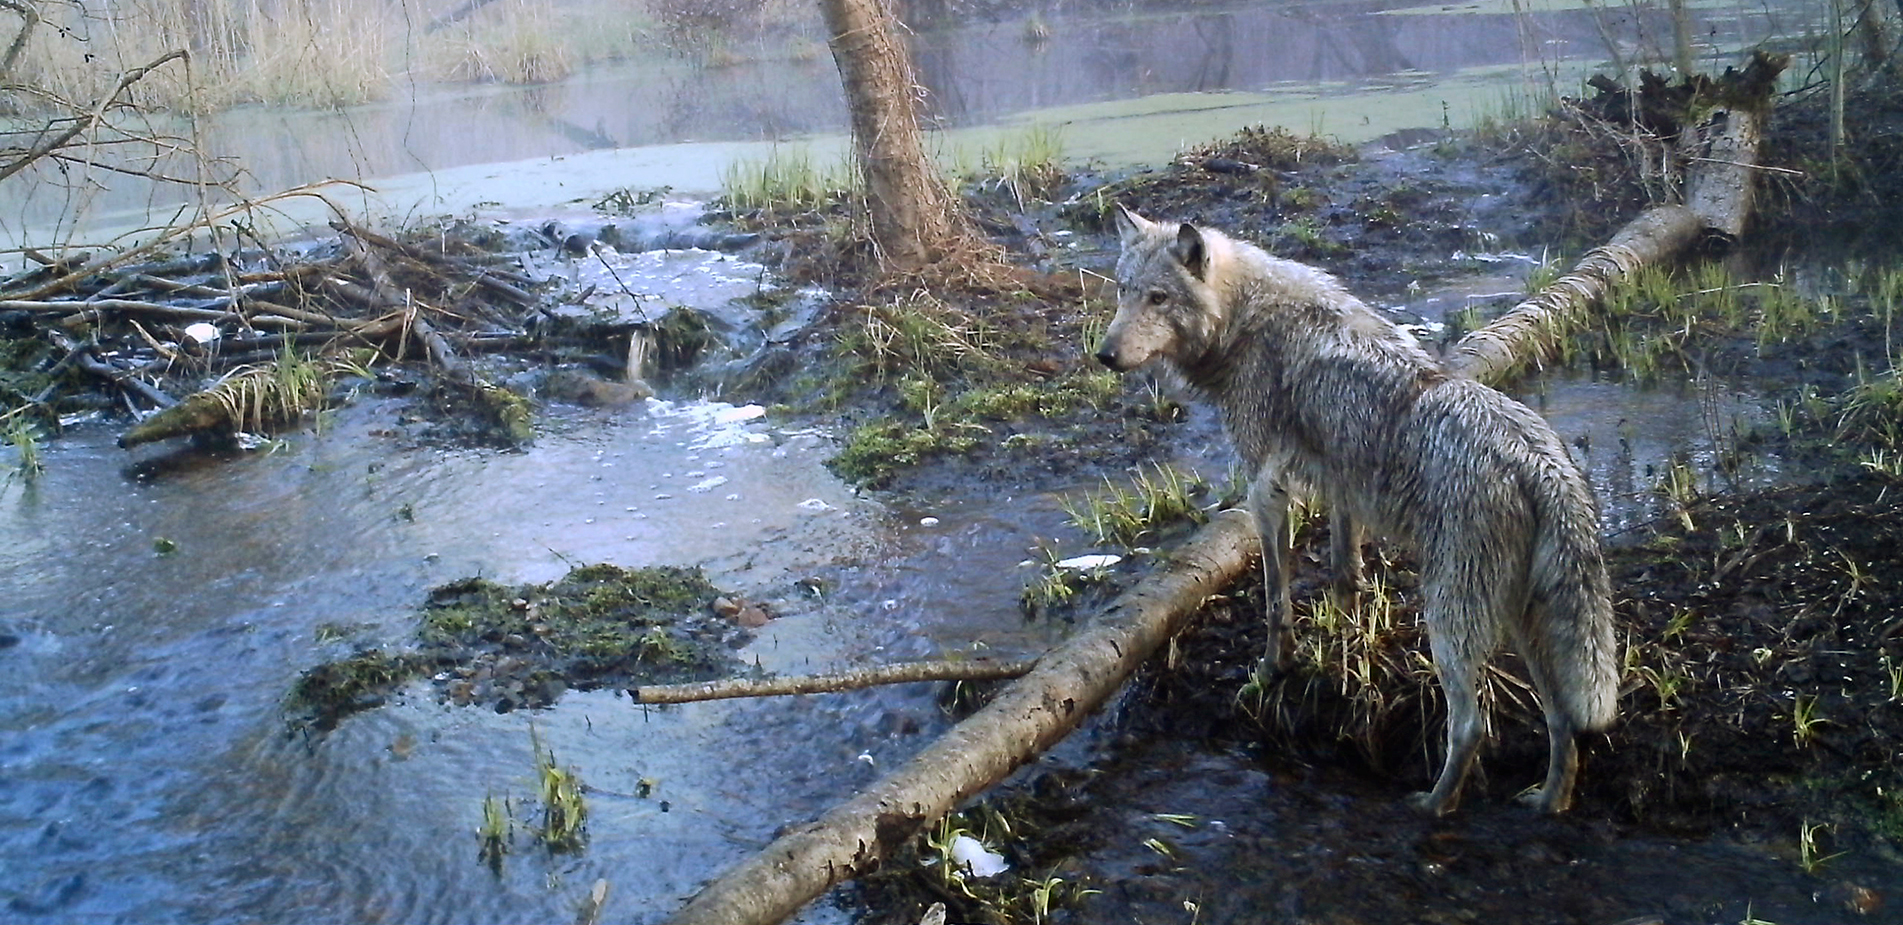 Οι μεταλλαγμένοι λύκοι που περιφέρονται στη ζώνη αποκλεισμού του Τσερνόμπιλ «έχουν αναπτύξει ικανότητες ανθεκτικότητας στον καρκίνο»